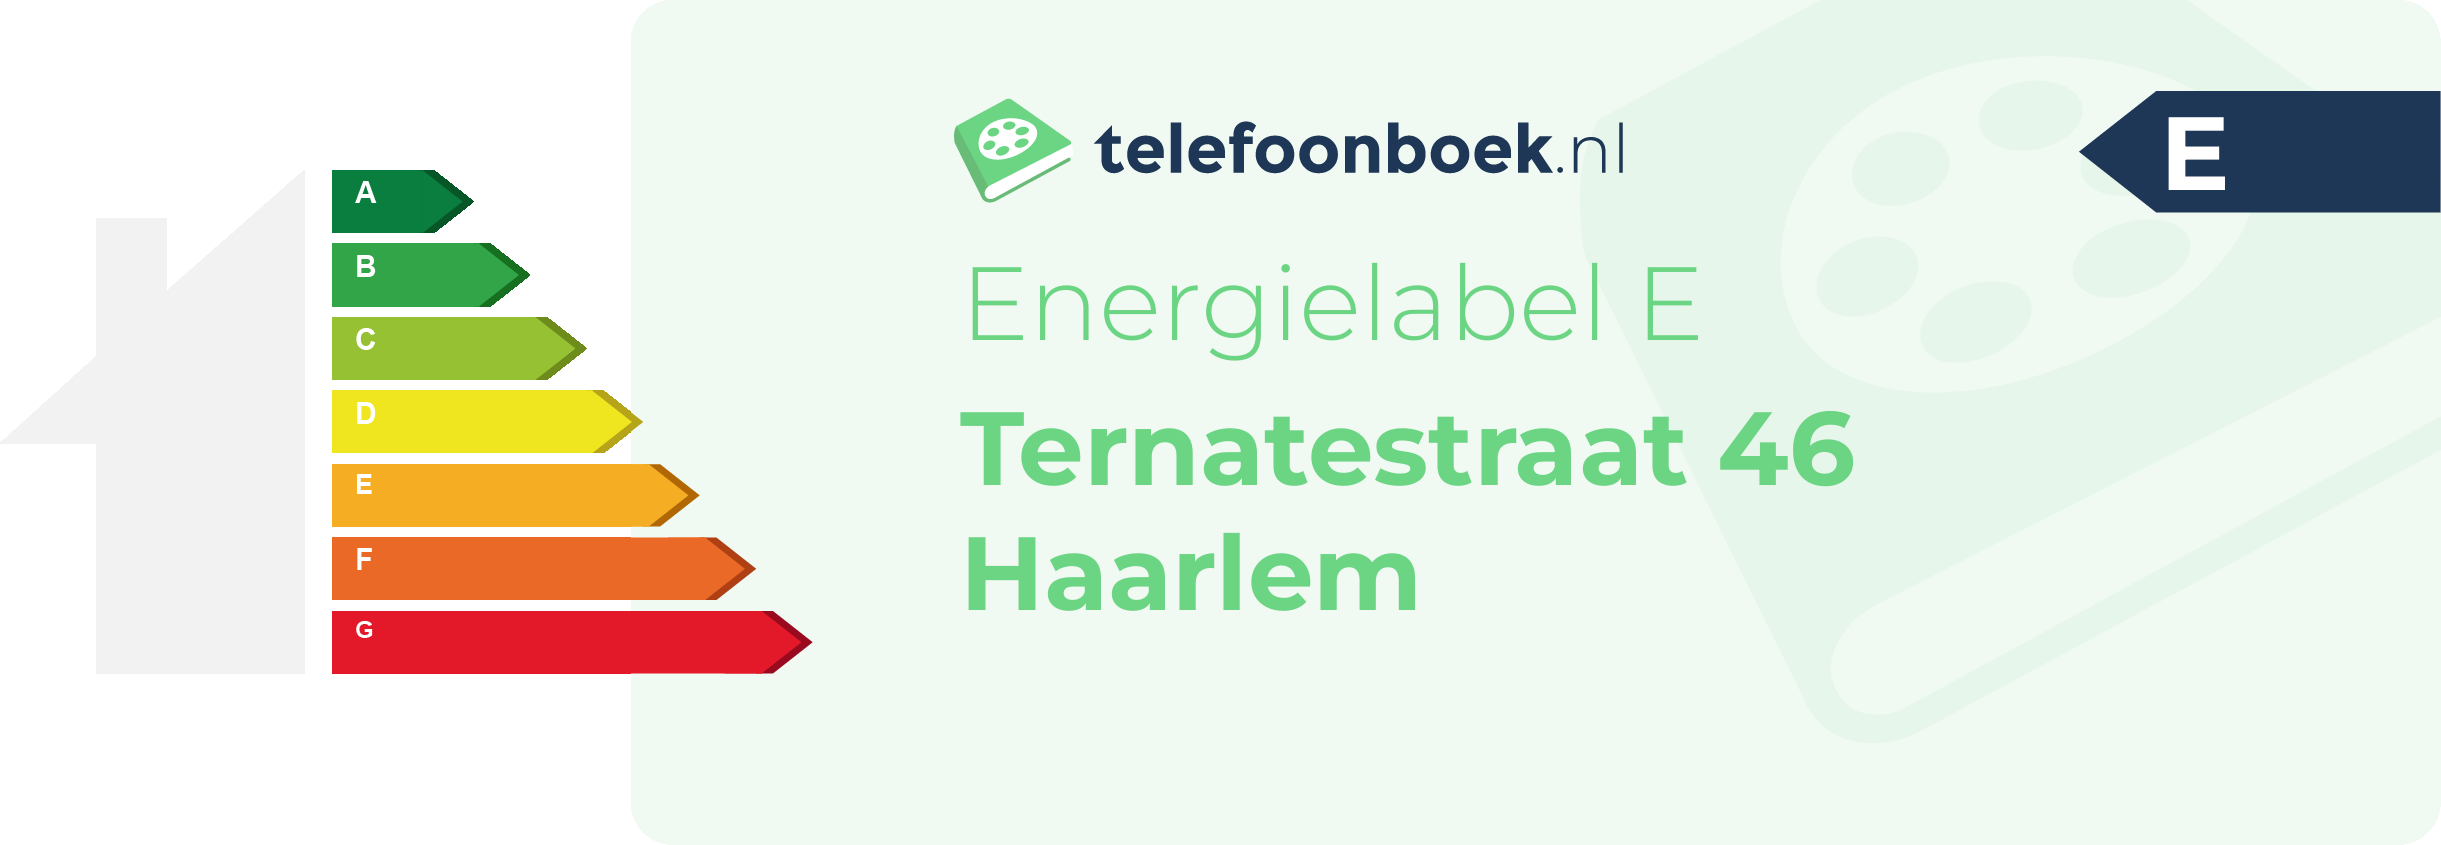 Energielabel Ternatestraat 46 Haarlem